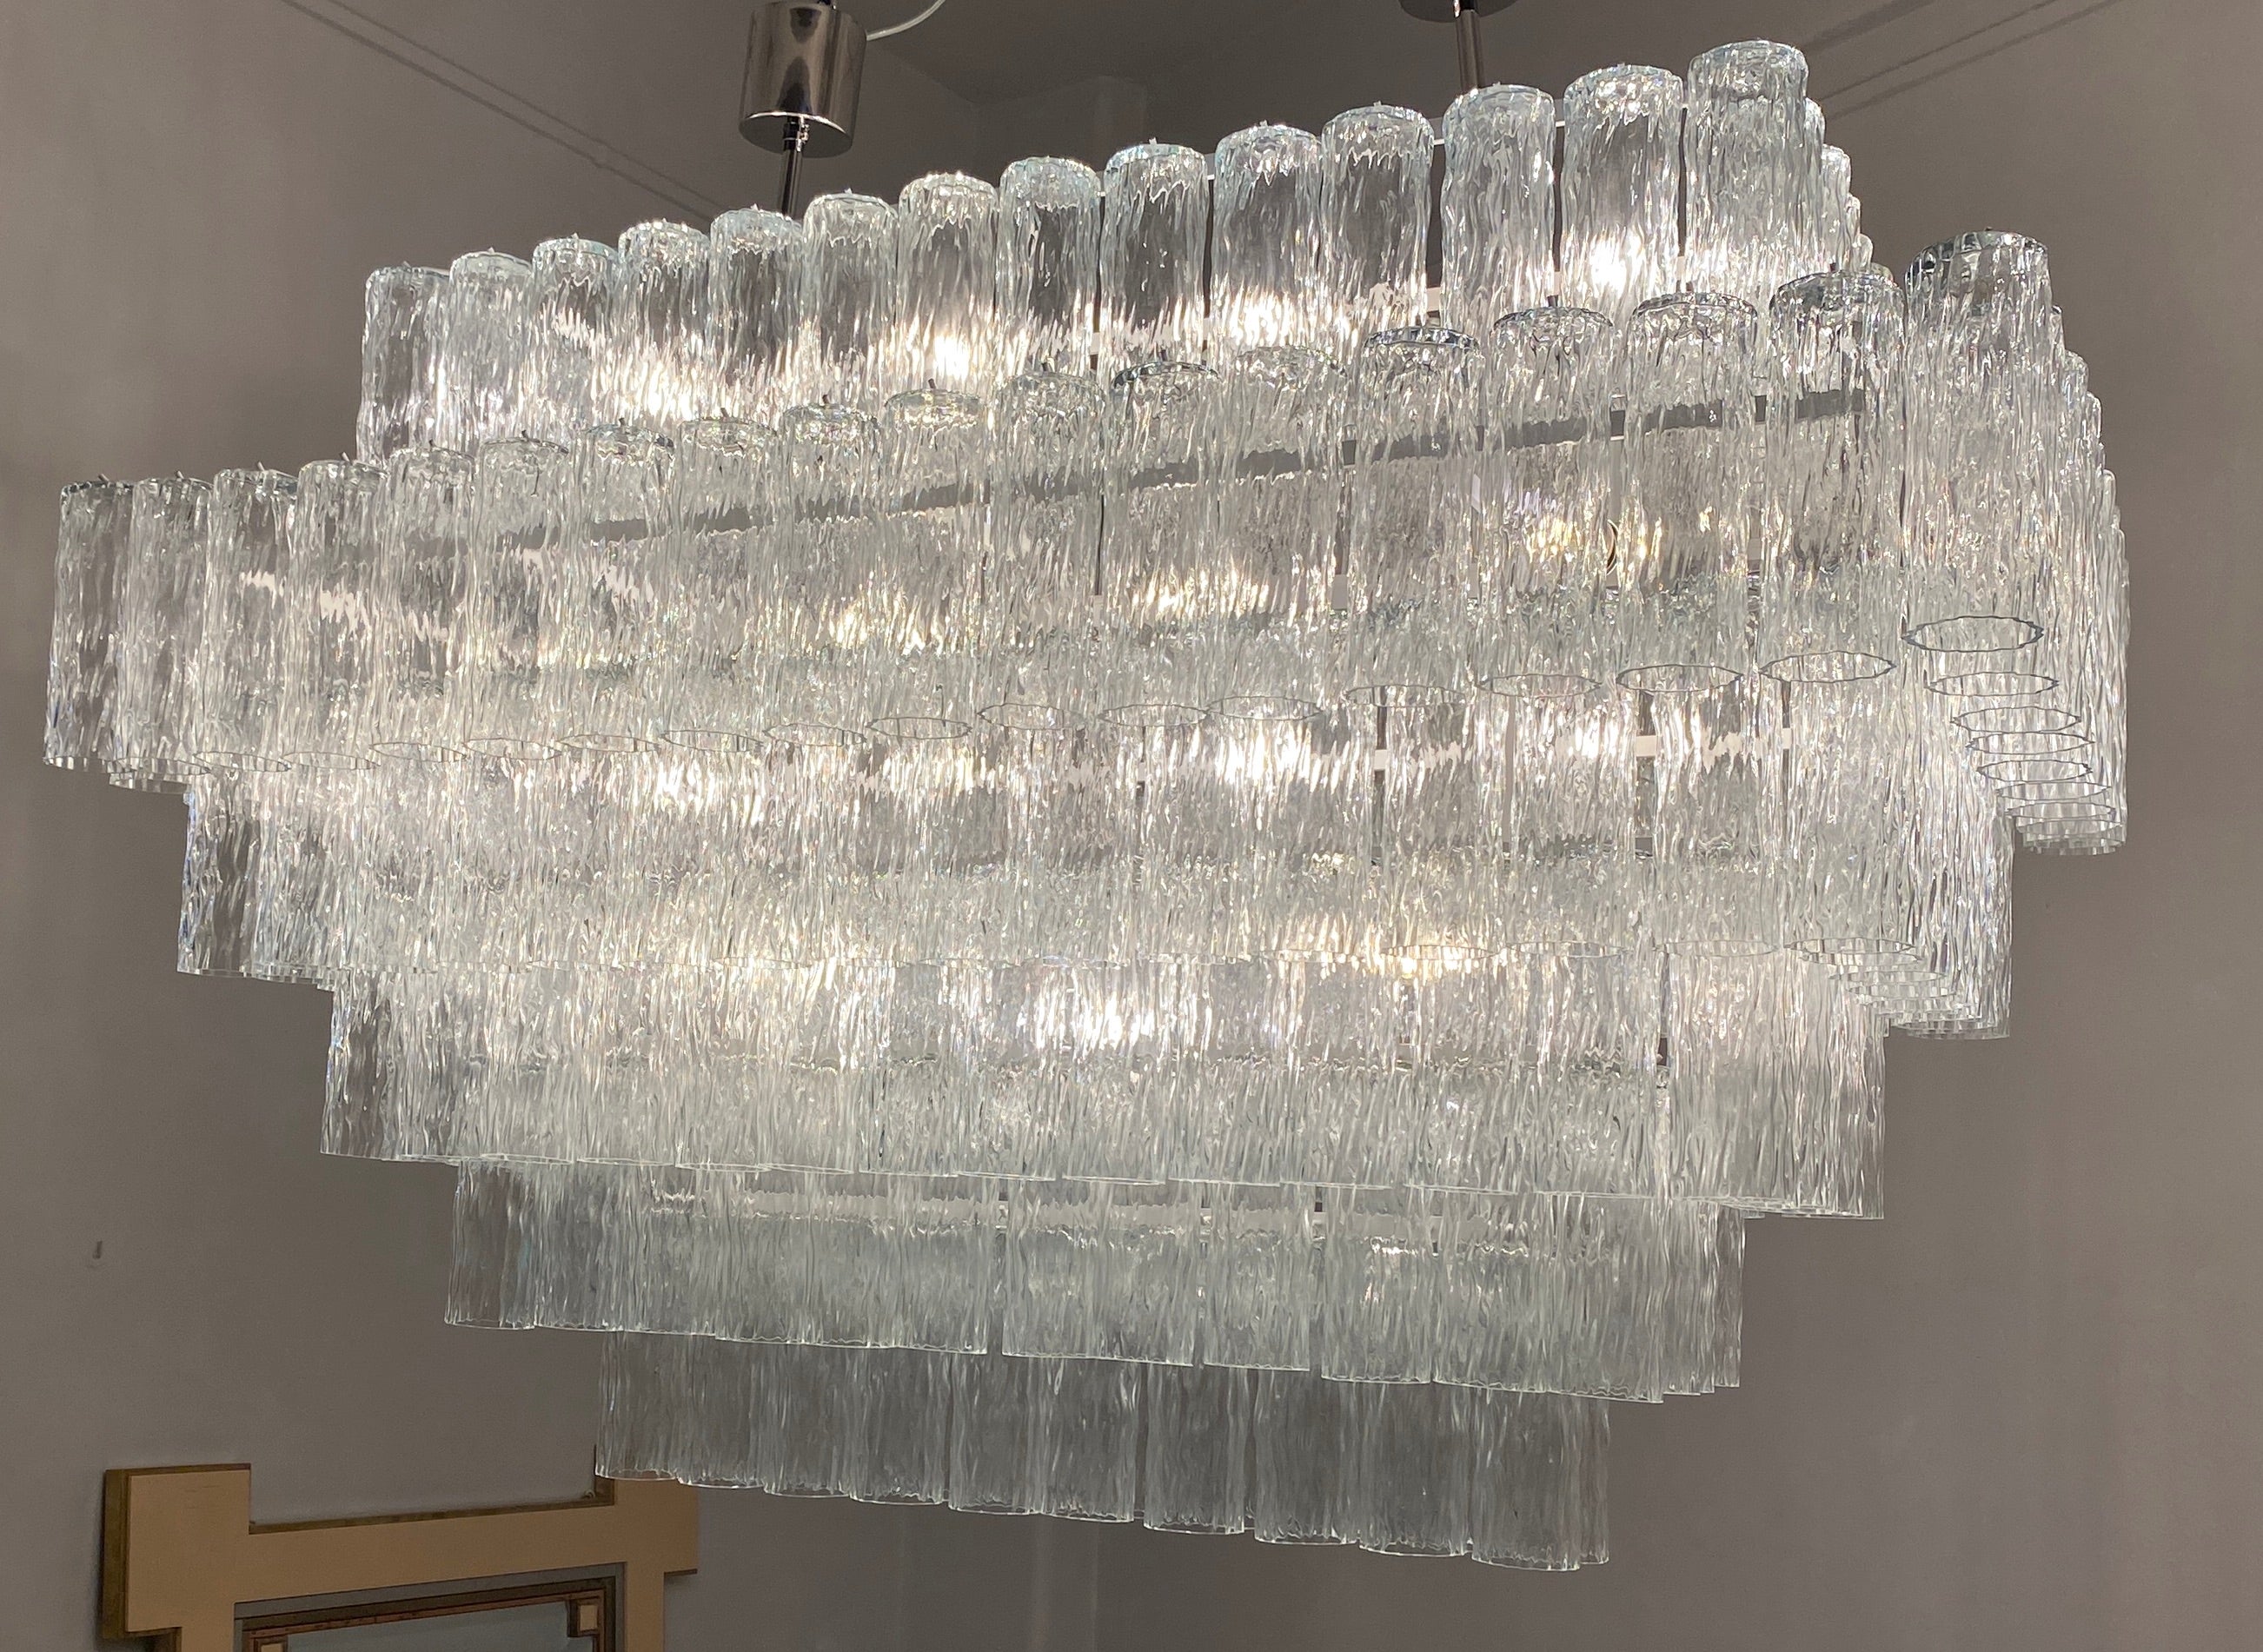 Spektakulärer Kronleuchter aus wertvollem mundgeblasenem Murano-Glas. Sie besteht aus etwa 200 Röhren auf sechs Ebenen, die von 24 Glühbirnen E 27 beleuchtet werden. Eine unglaubliche Lichtquelle, um einen großen Bereich zu beleuchten.
Diese Leuchte